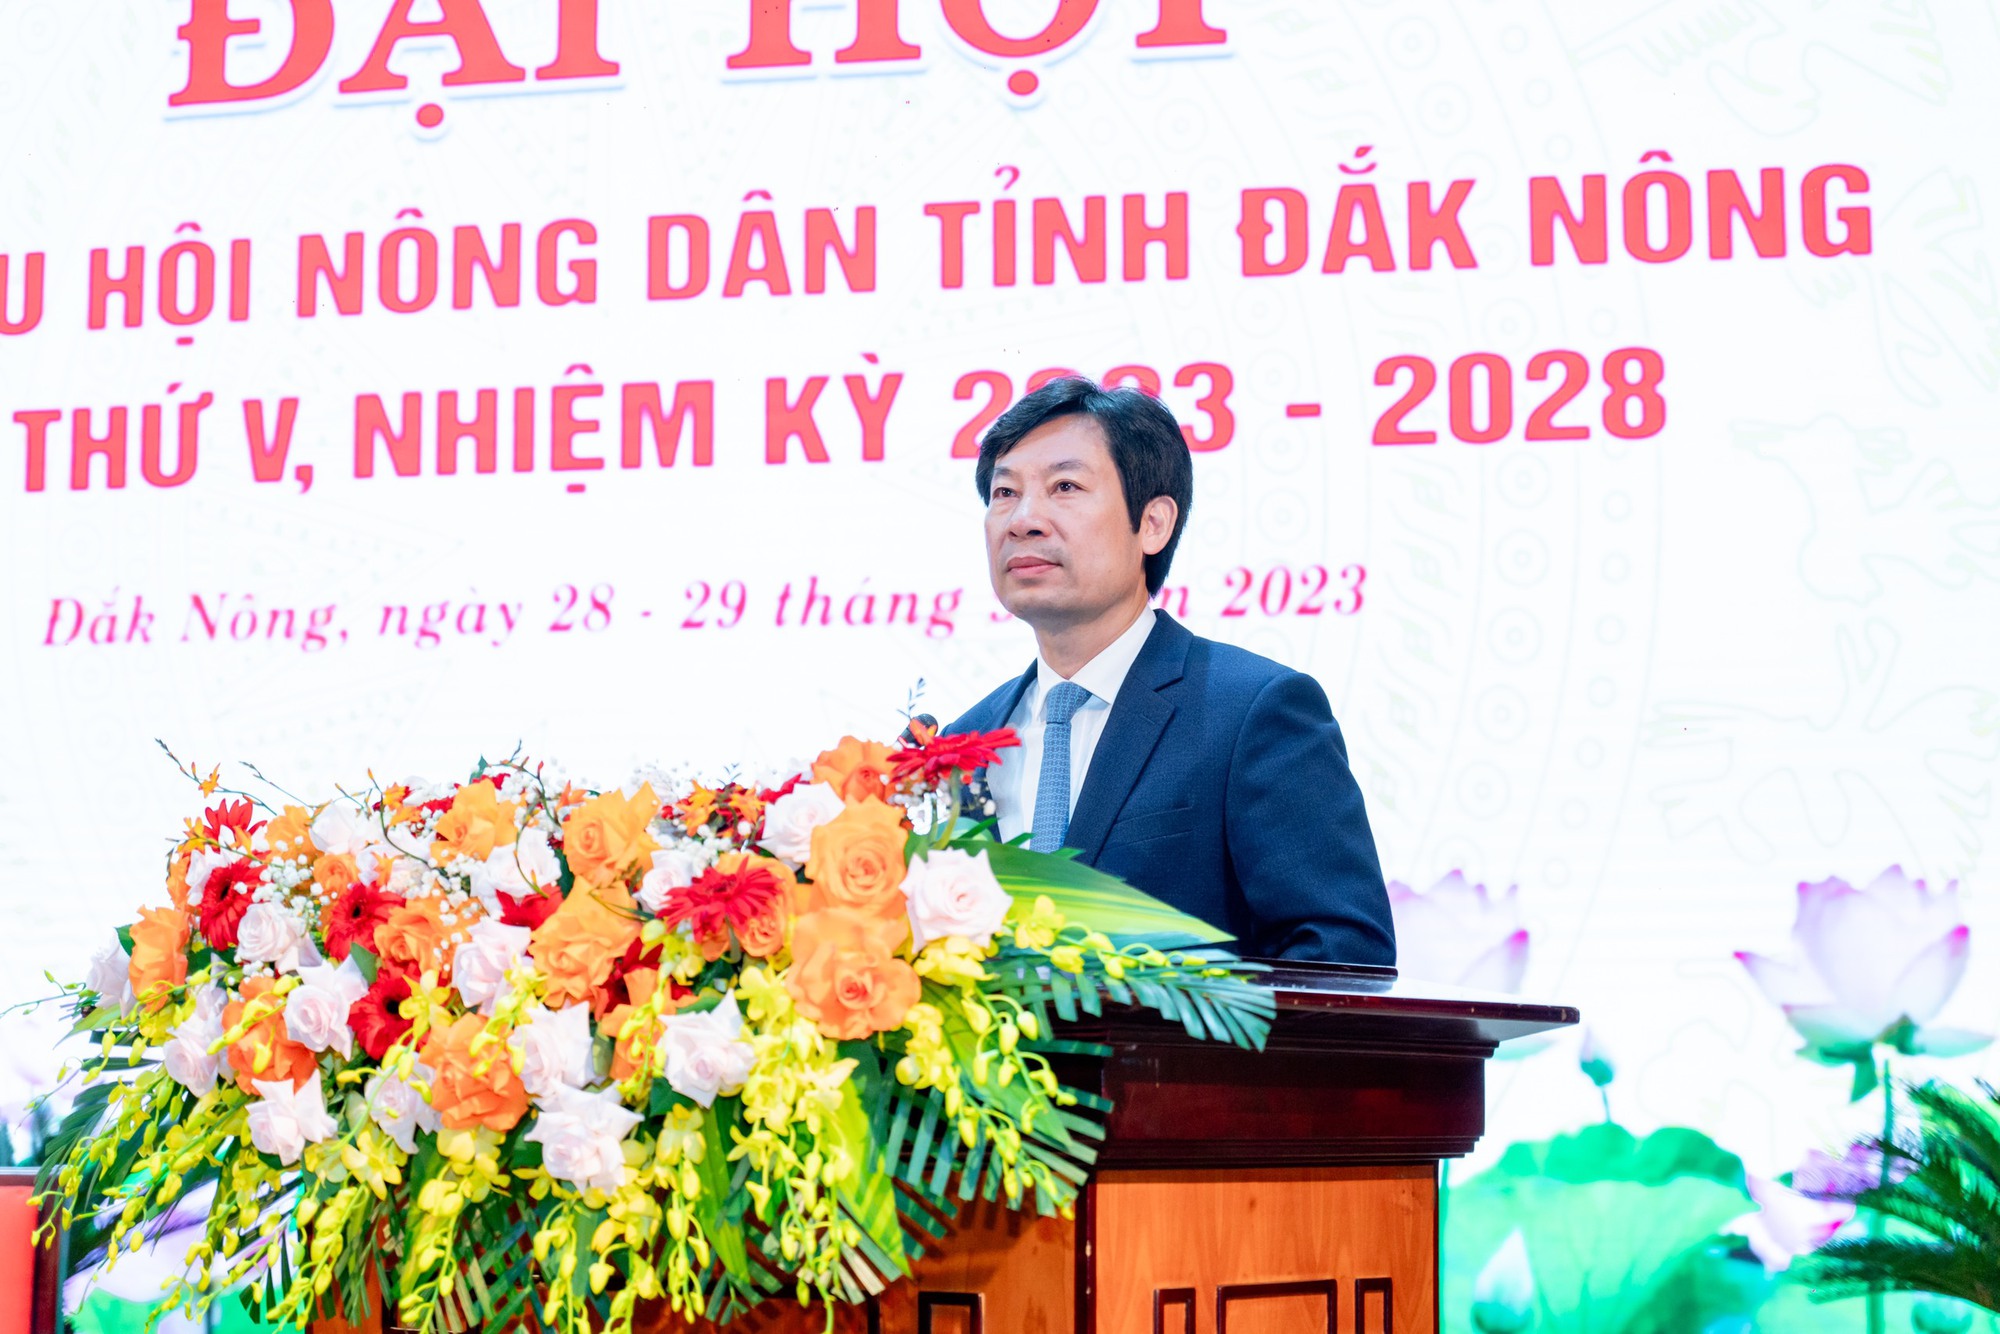 Phó Chủ tịch Hội NDVN Nguyễn Xuân Định gợi mở những nhiệm vụ quan trọng tại Đại hội đại biểu Hội ND tỉnh Đắk Nông - Ảnh 5.